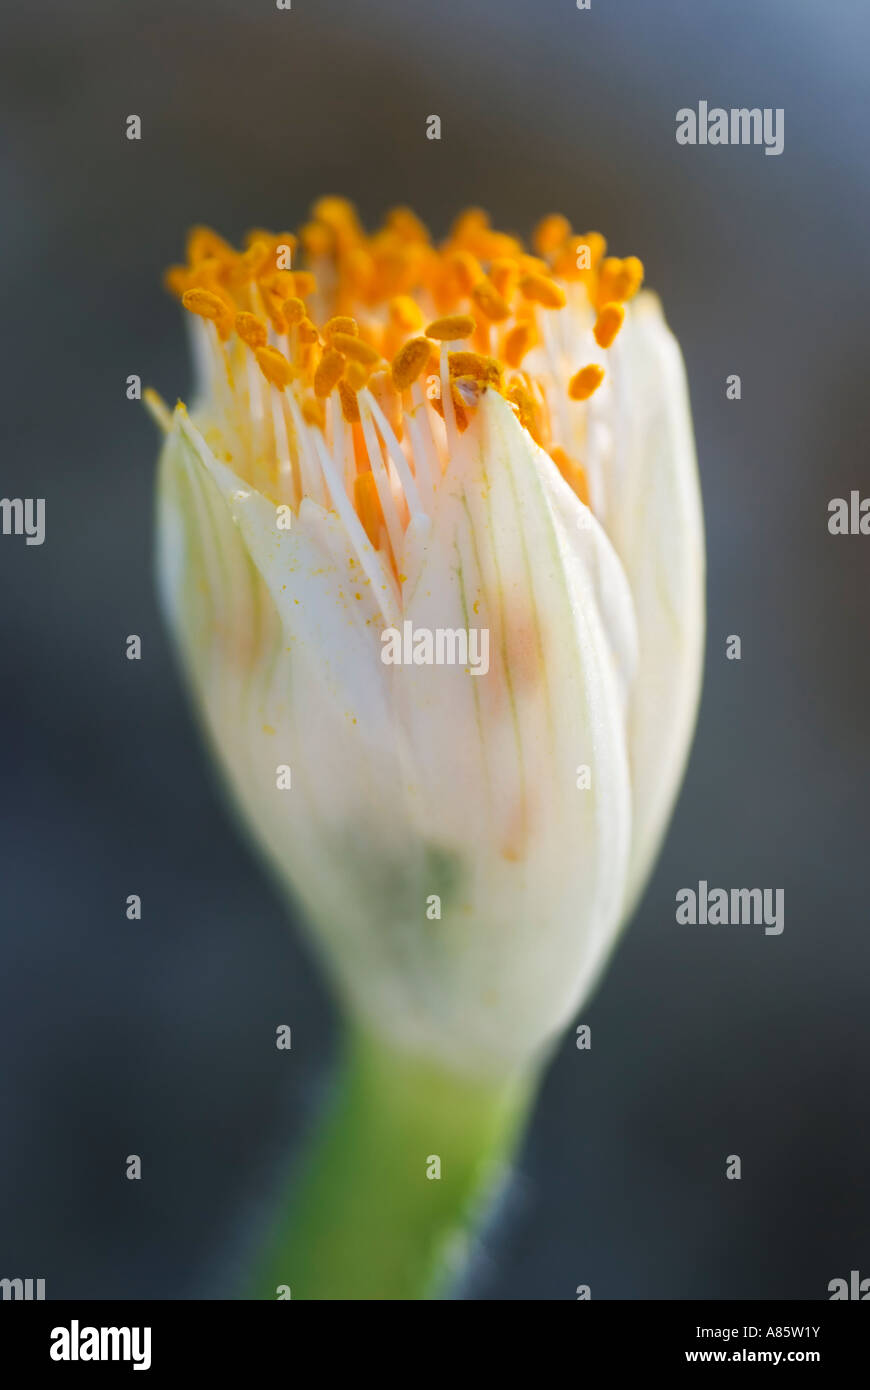 Eine Nahaufnahme einer Haemanthus Anlage - Trivialnamen Blut Lily, Pinsel oder Fackel Lilie. Stockfoto